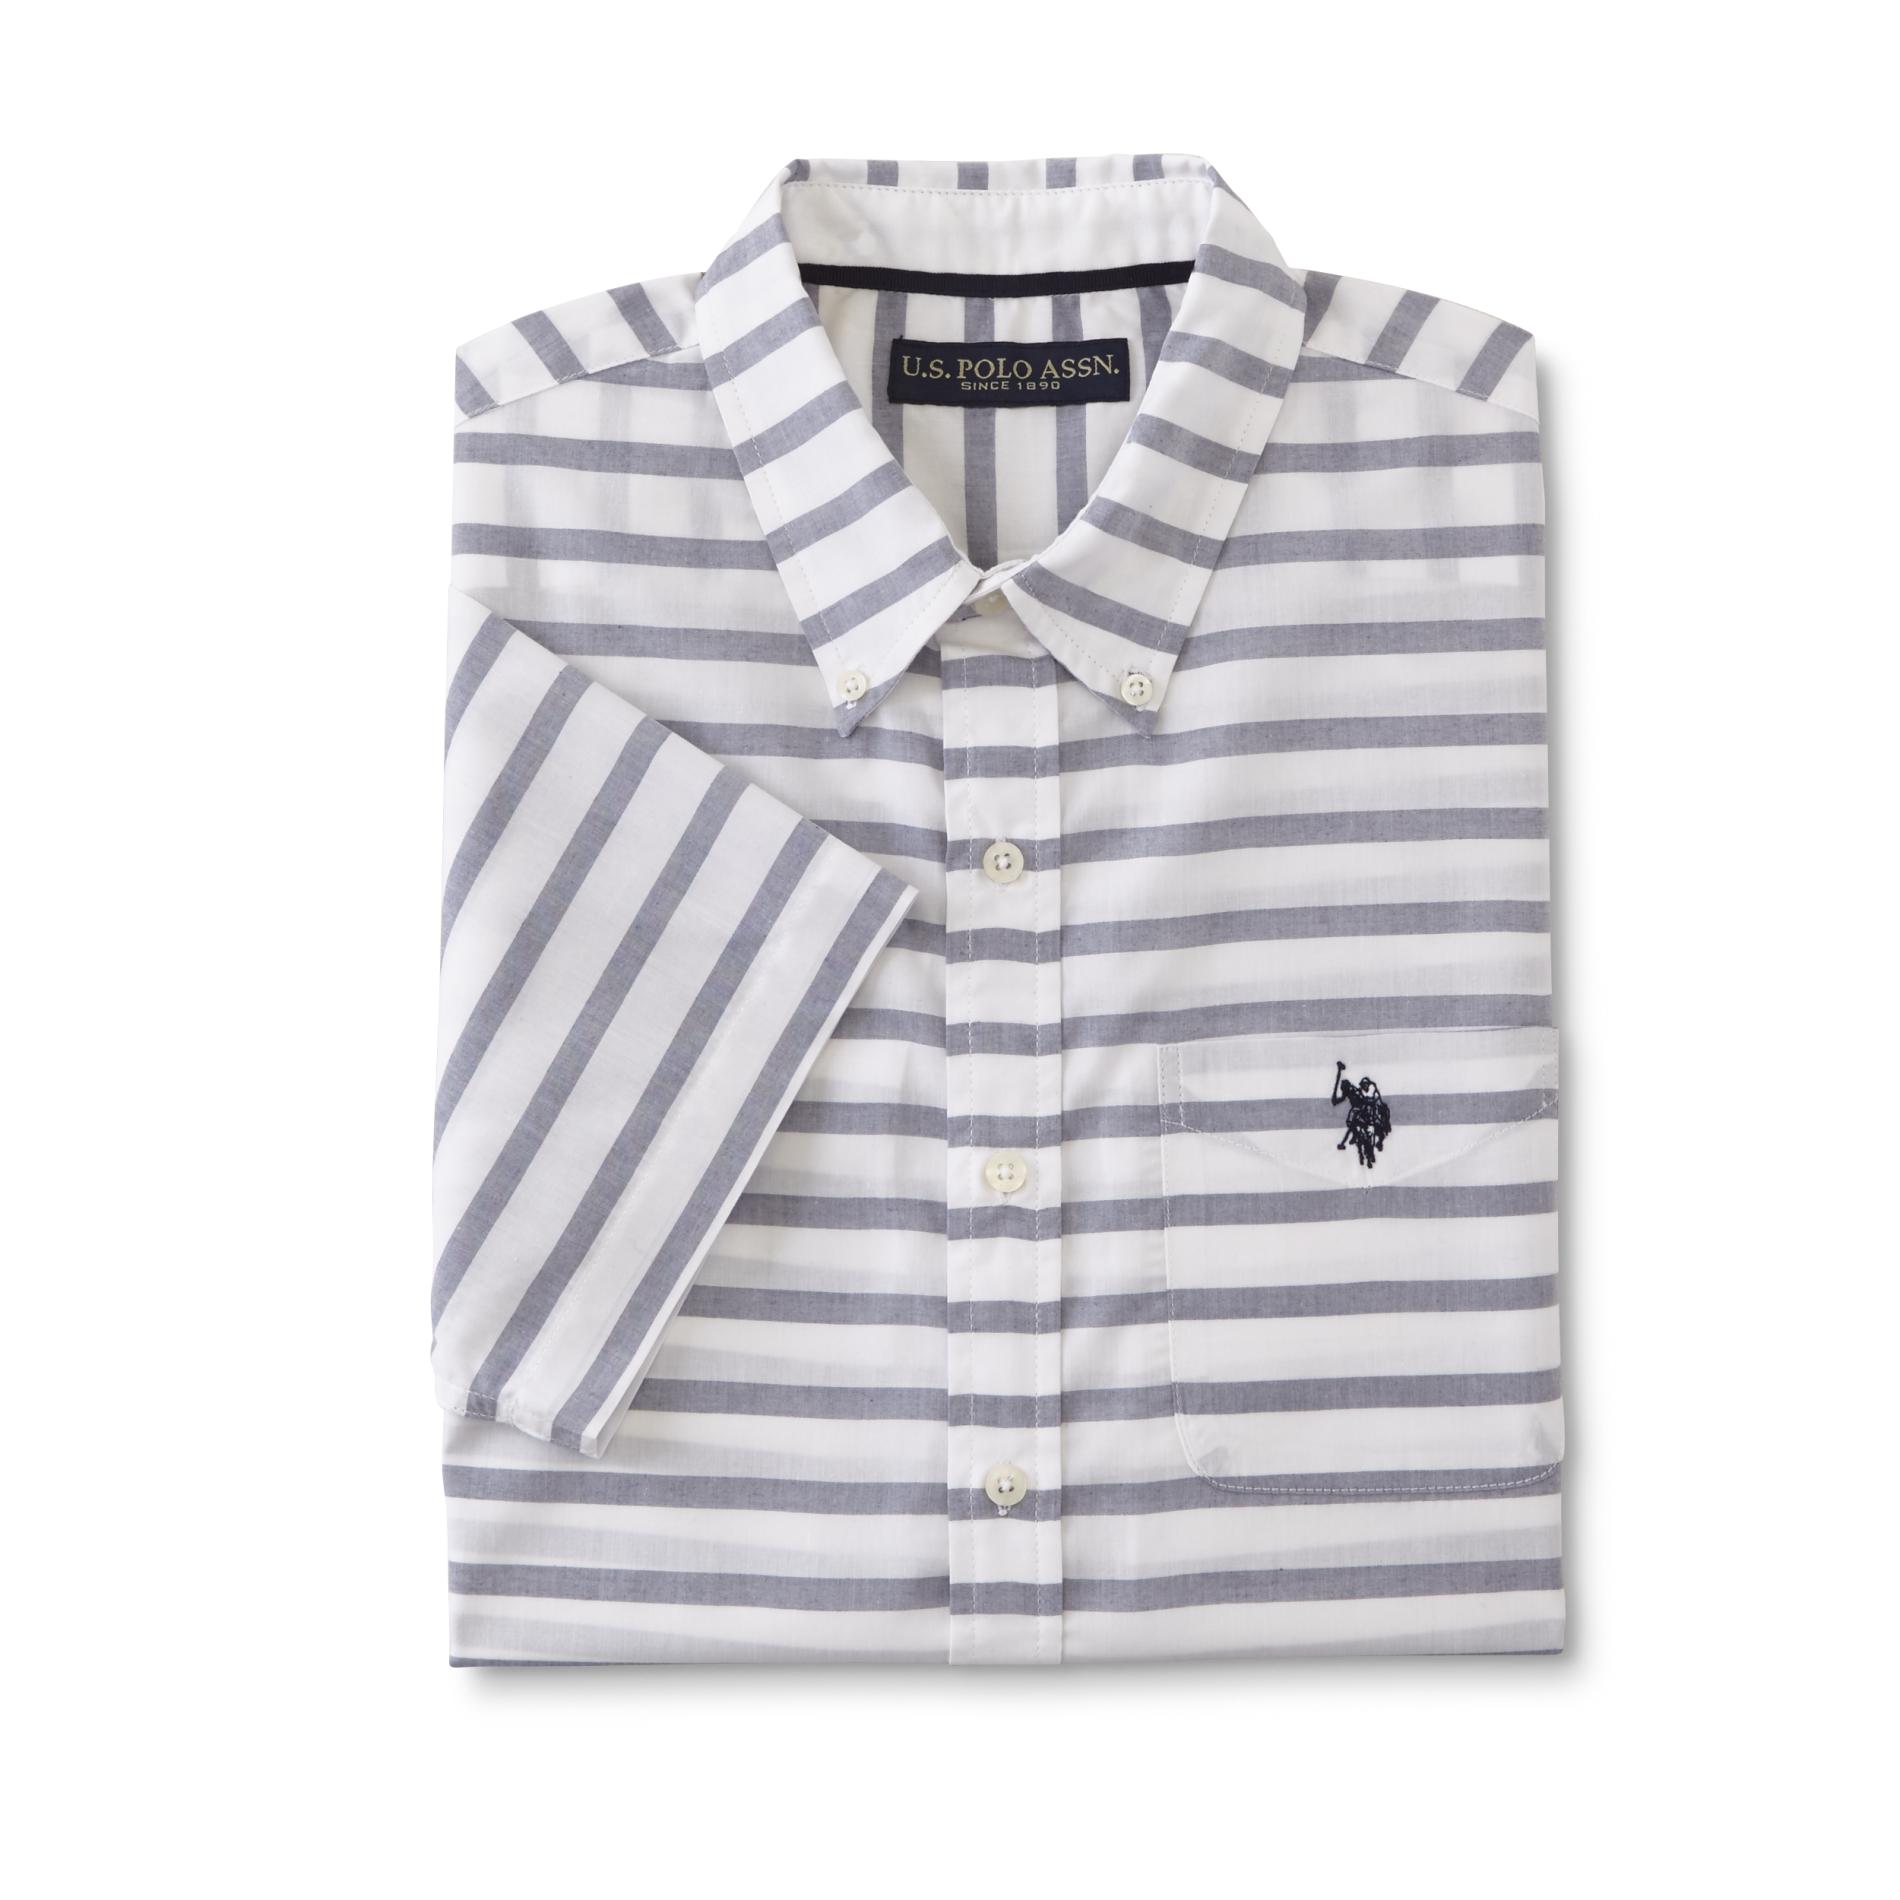 U.S. Polo Assn. Men's Short-Sleeve Shirt - Striped